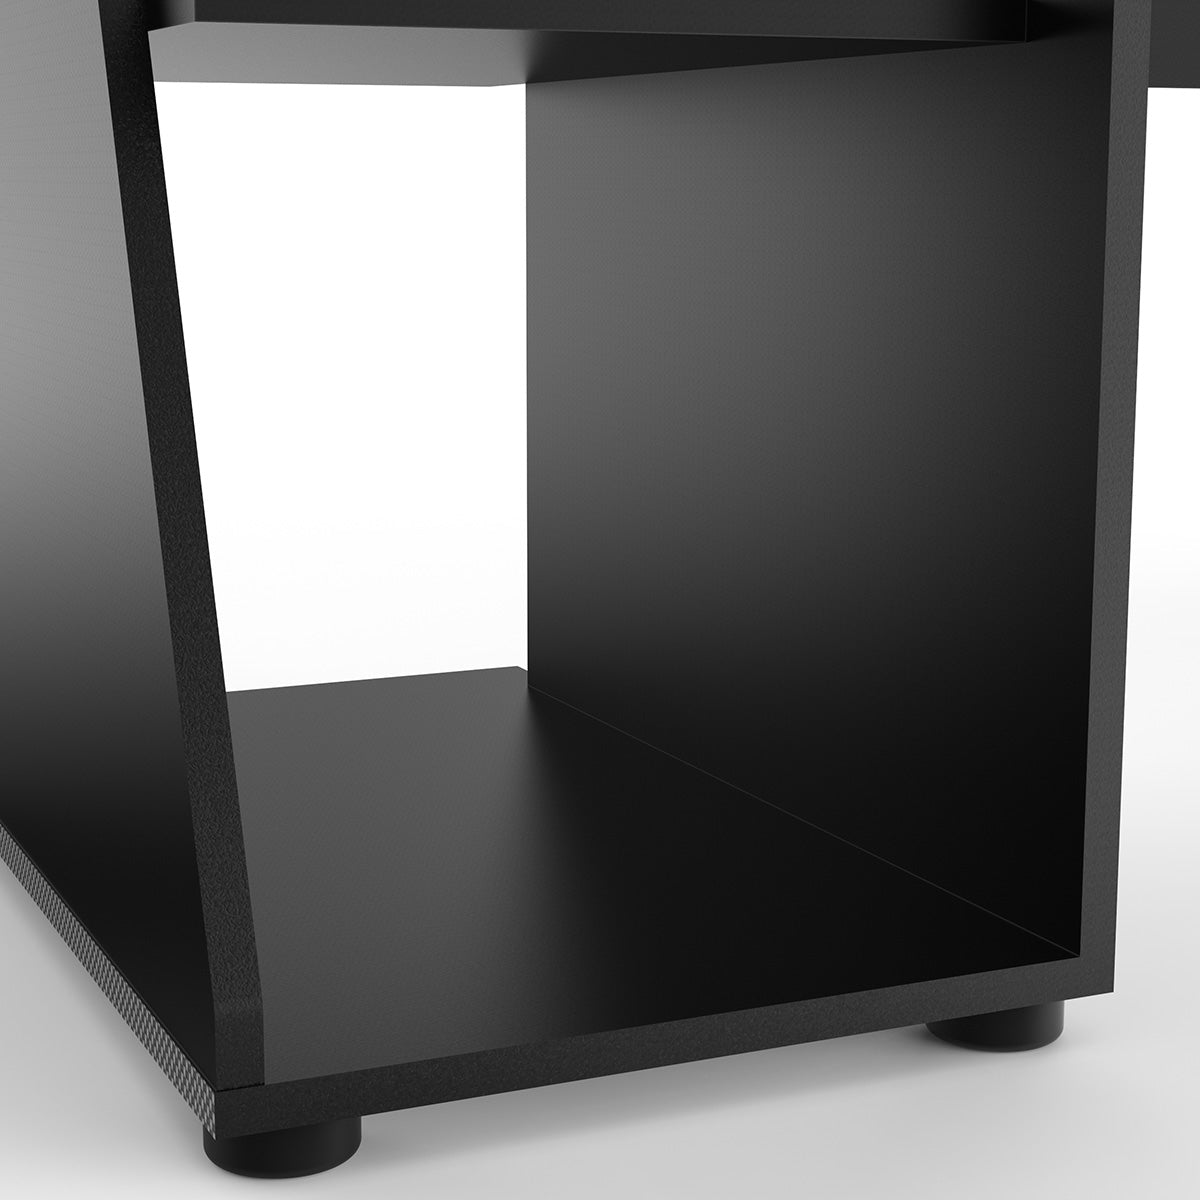 Gamingschreibtisch Univers schwarz / grau 138 x 67 cm mit großer Ablageflächen & Headset-Halterung